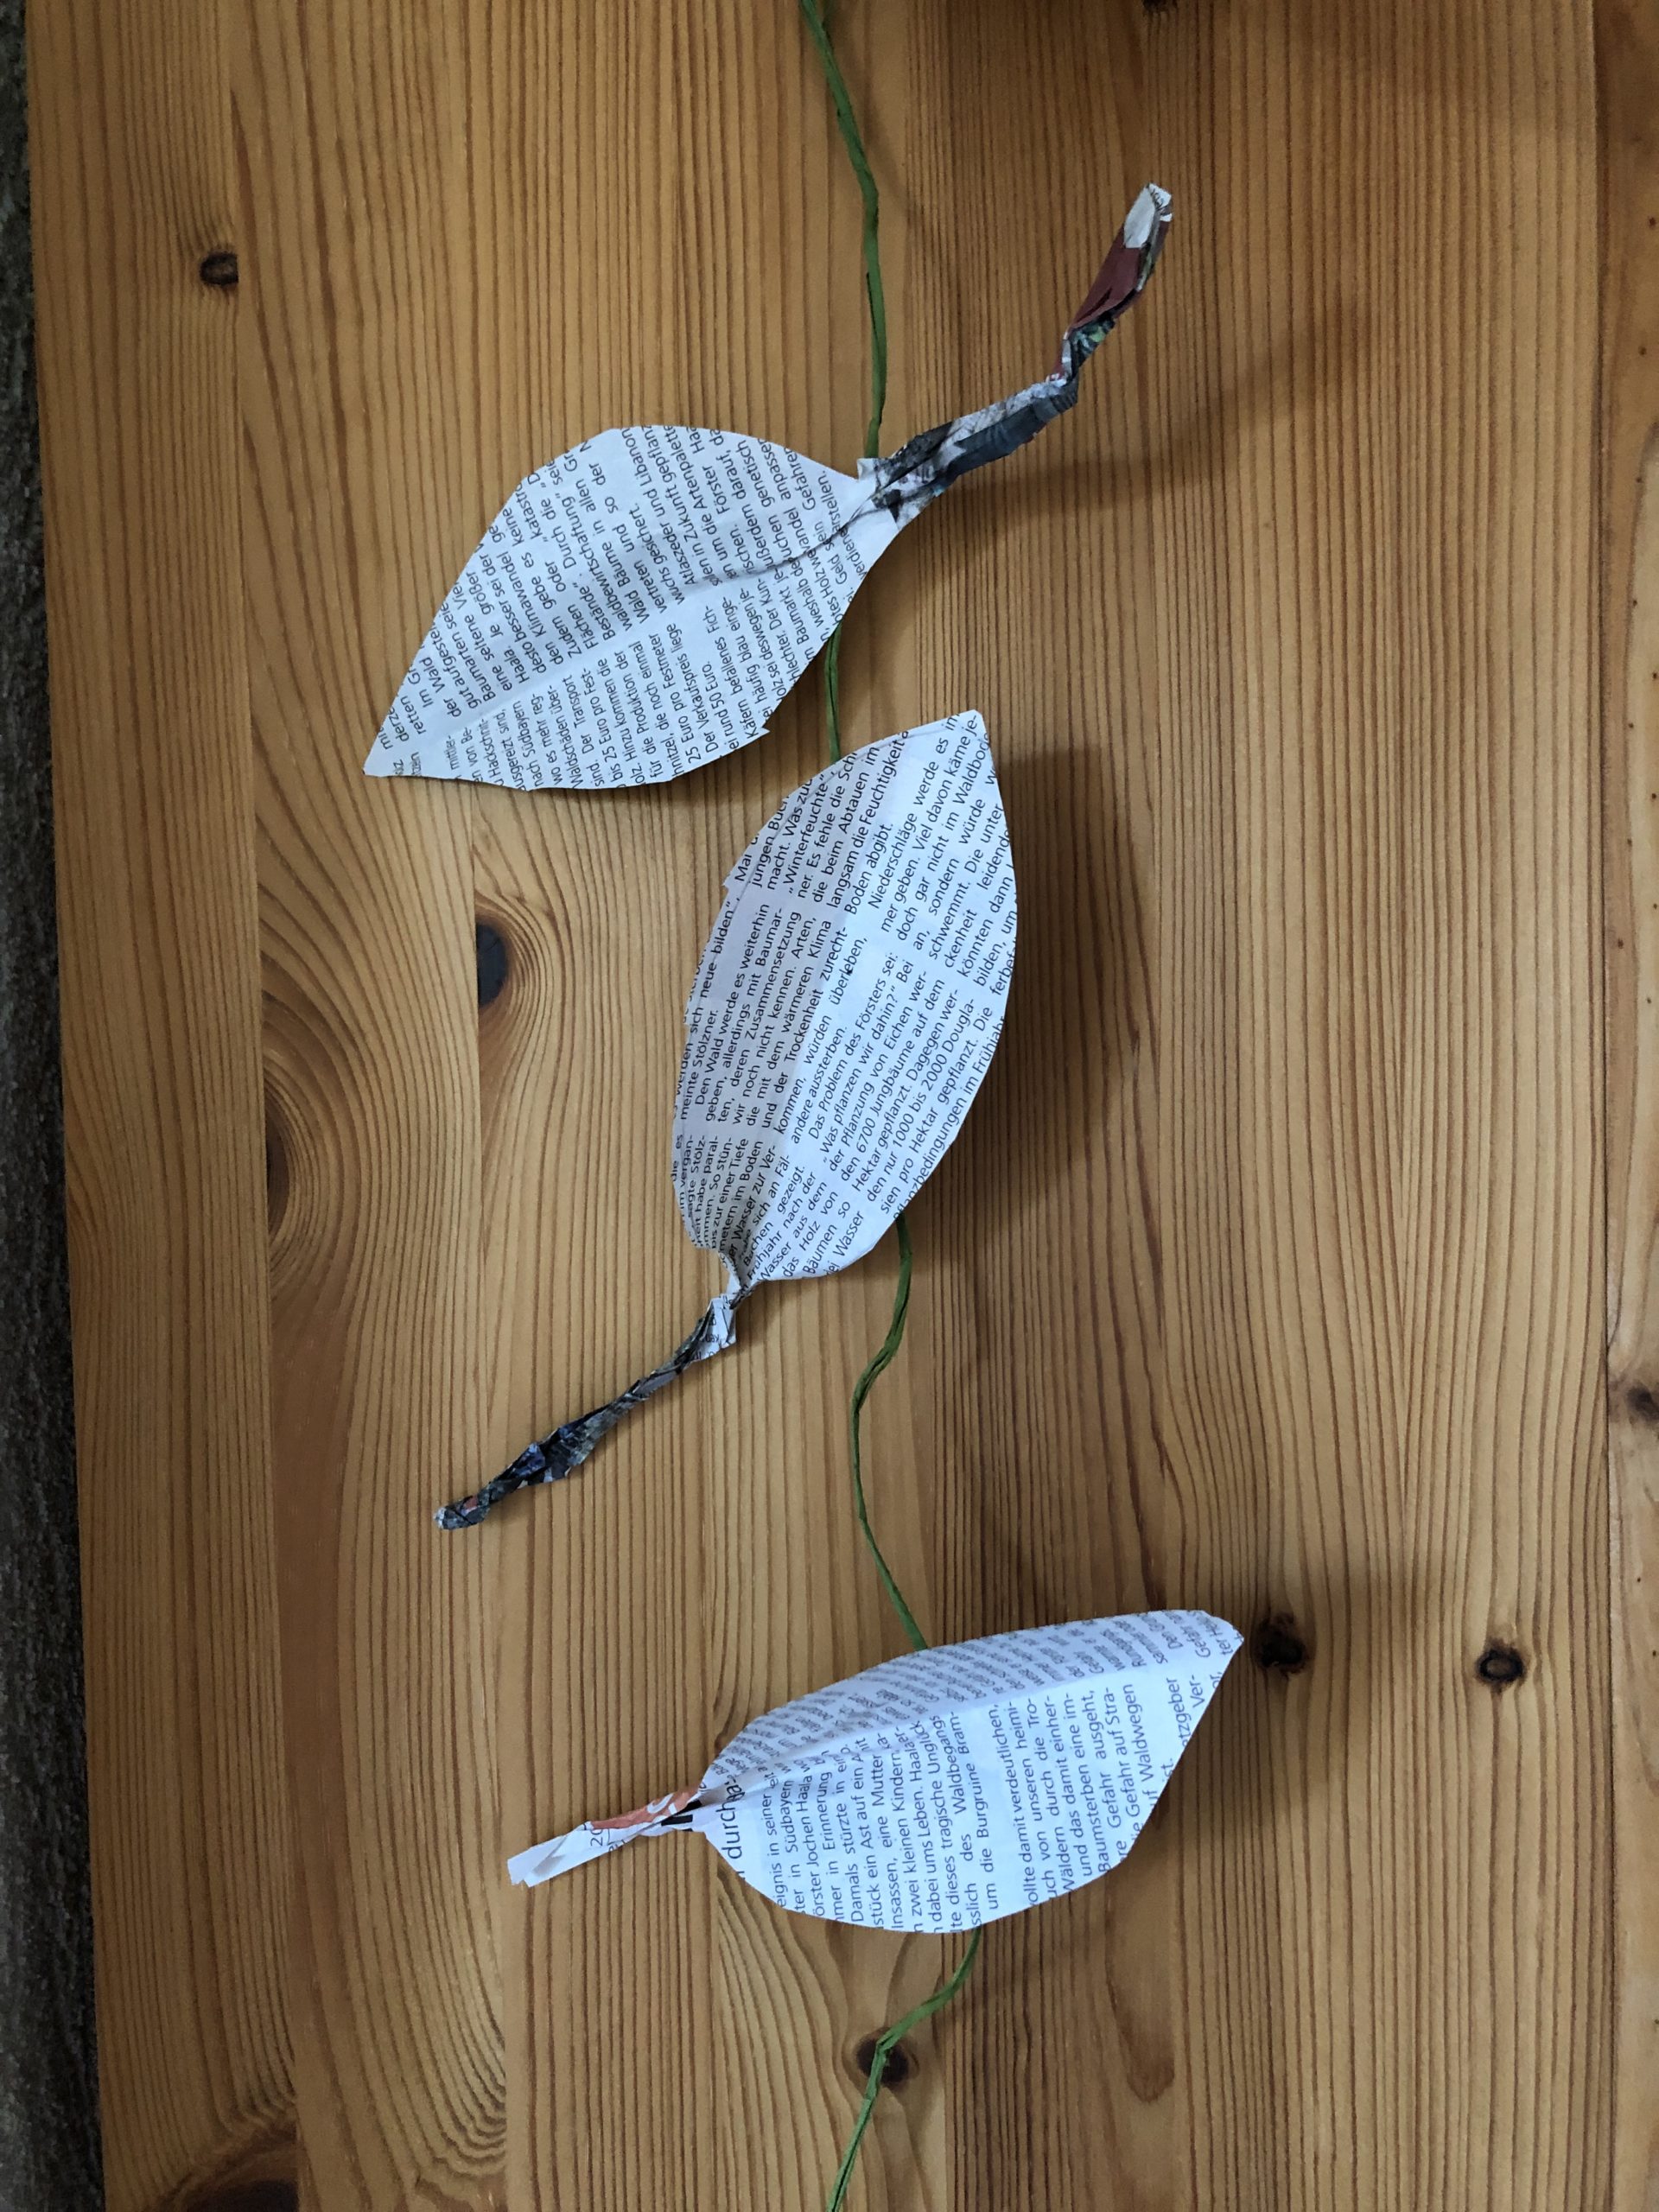 3. Bild zum Schritt 11 für das Bastel- und DIY-Abenteuer für Kinder: 'Jetzt klebt die Blätter an eine Bastschnur und hängt sie...'